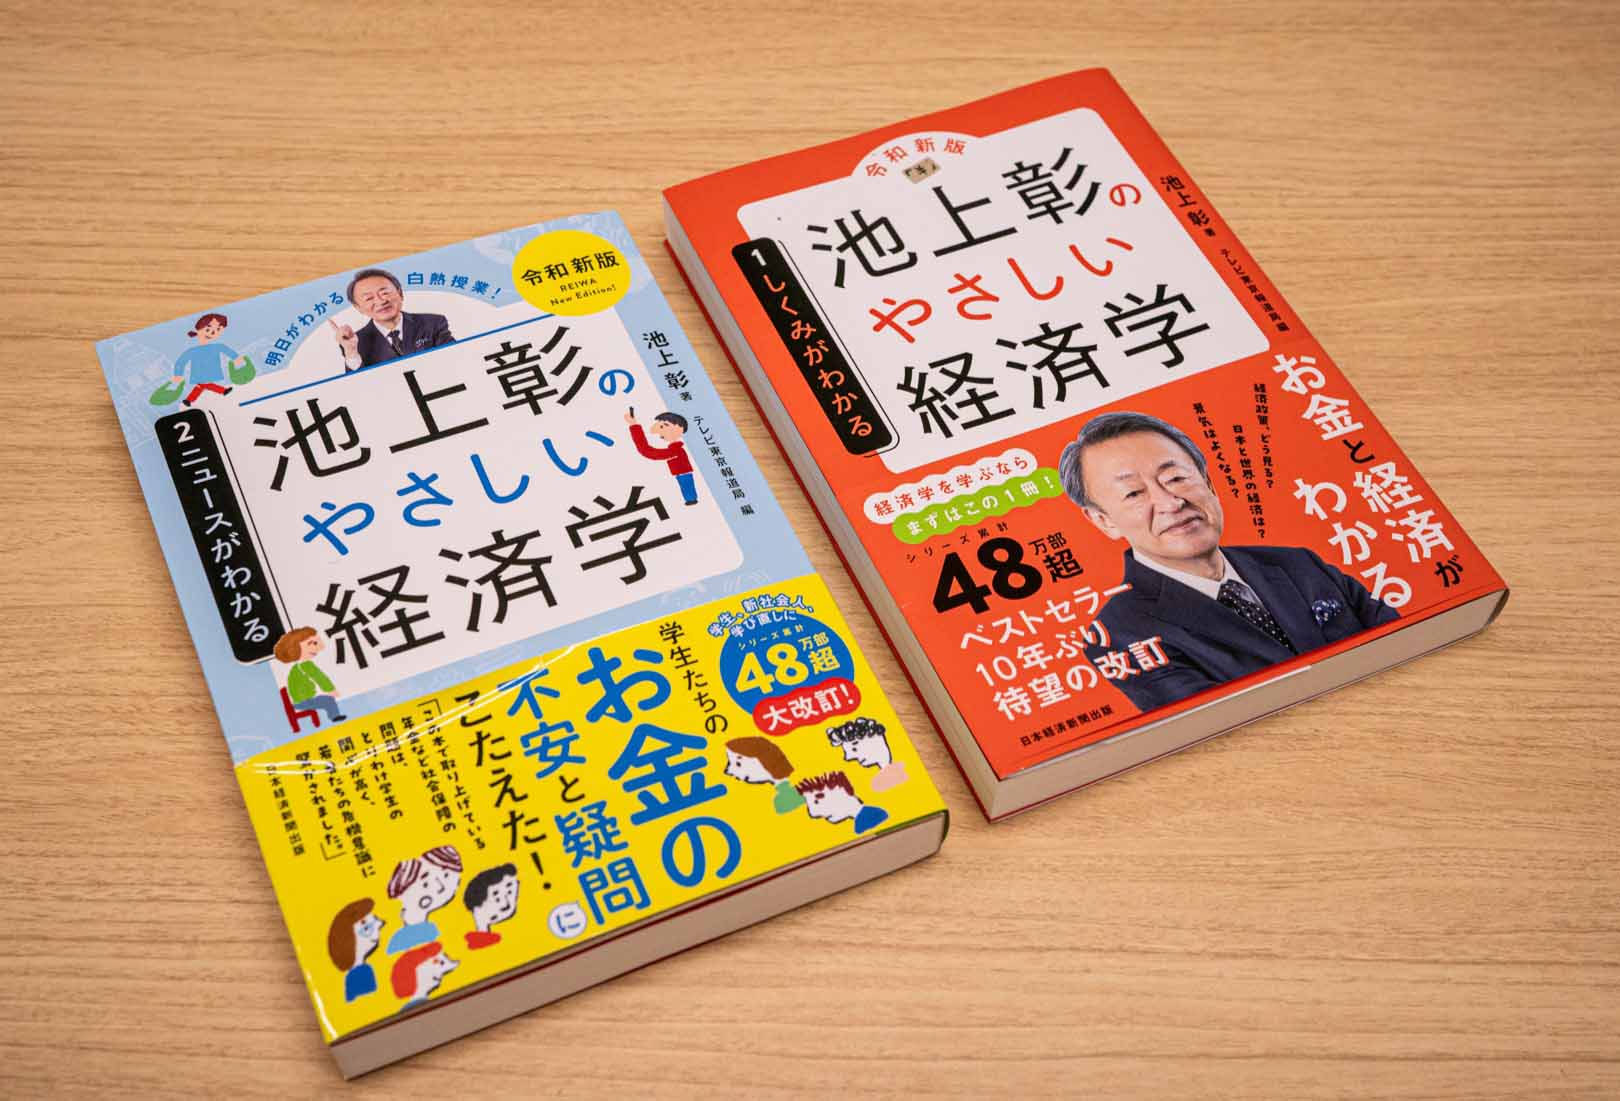 池上彰 歴史の流れや経済のリズムをつかむのに役立つ本 | 日経BOOKプラス